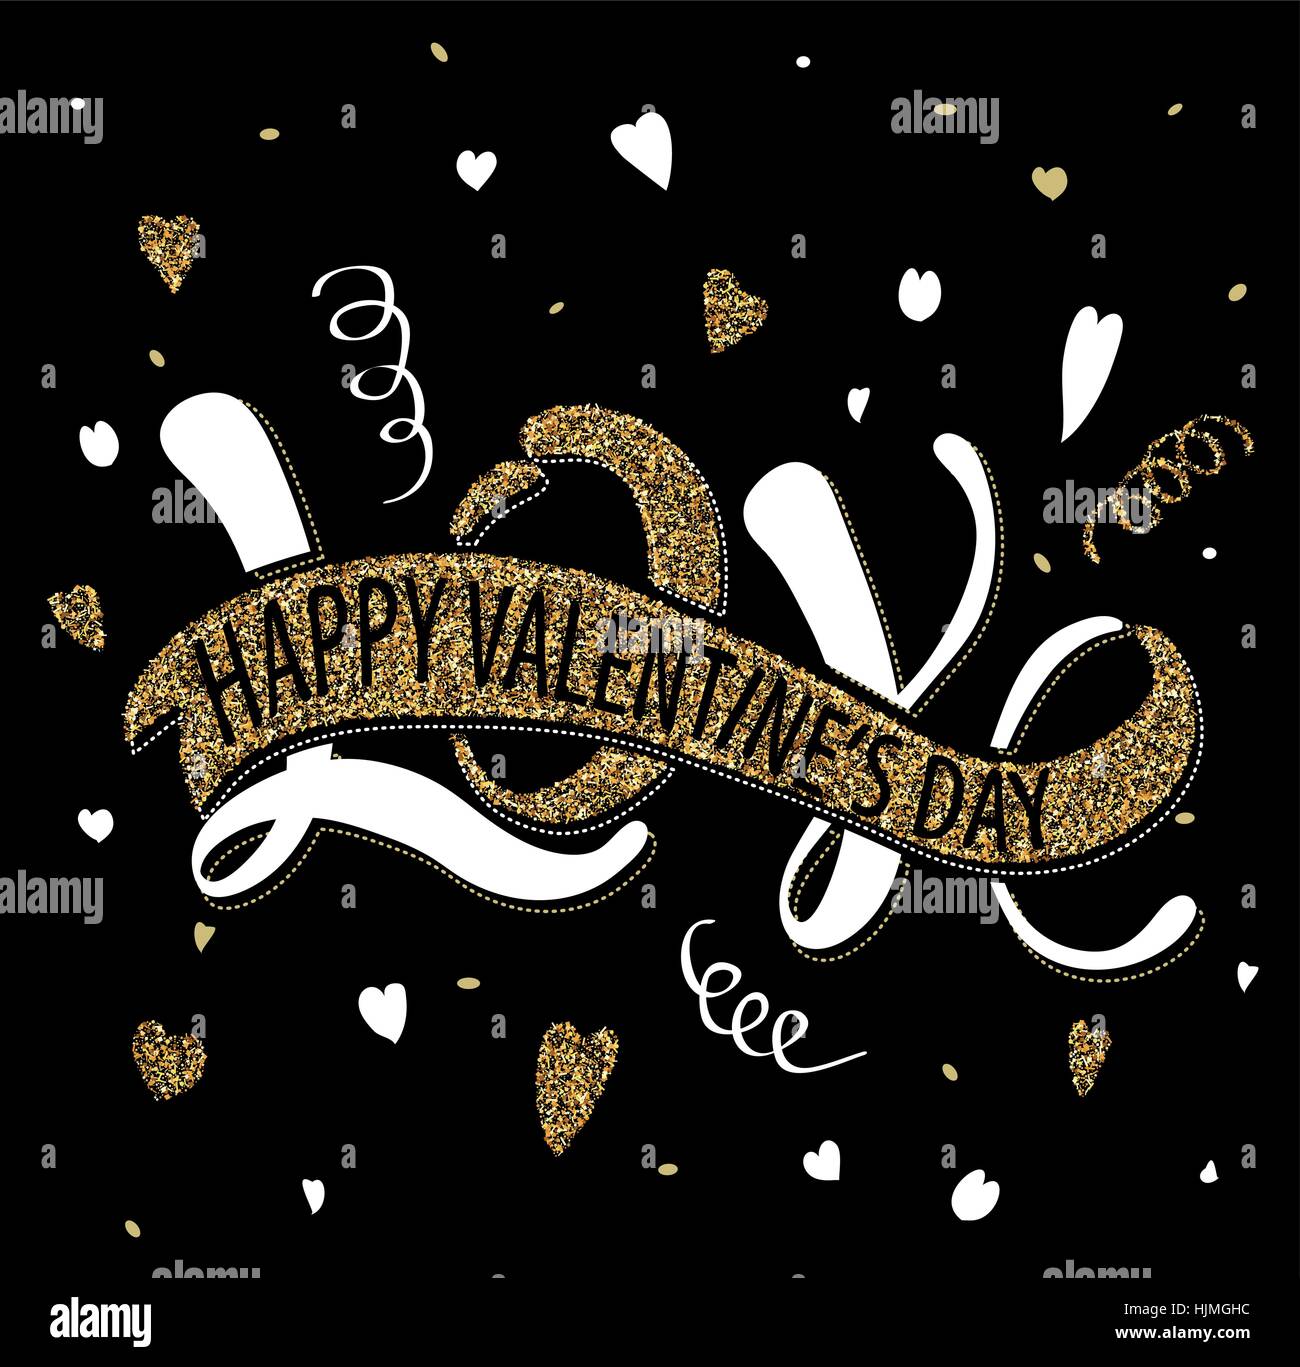 Illustration de l'amour - Bonne Saint Valentin, Romantique inscription manuscrite pour poster, Valentines Day Greeting card Illustration de Vecteur